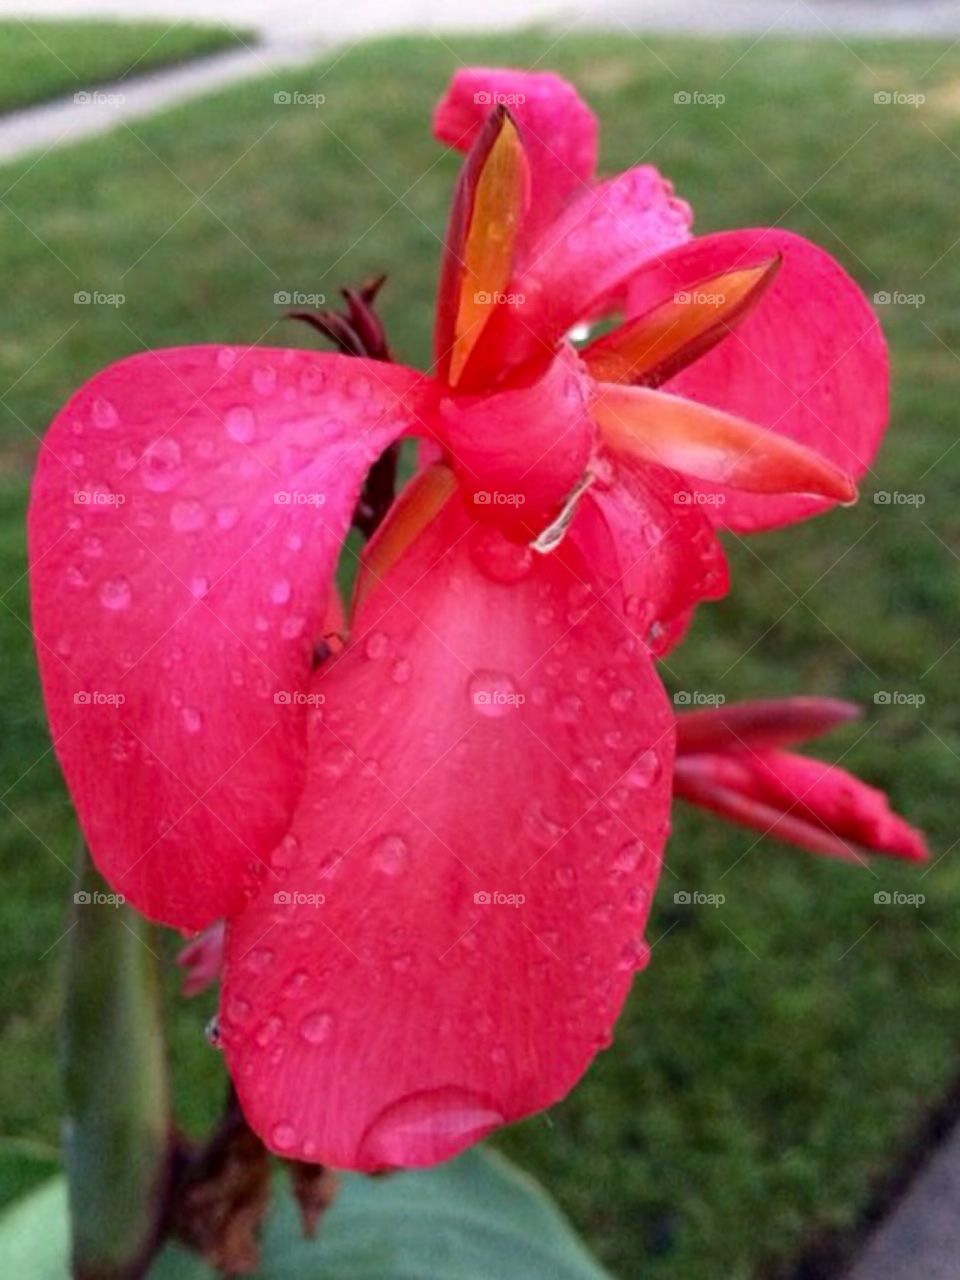 Pretty pink flower